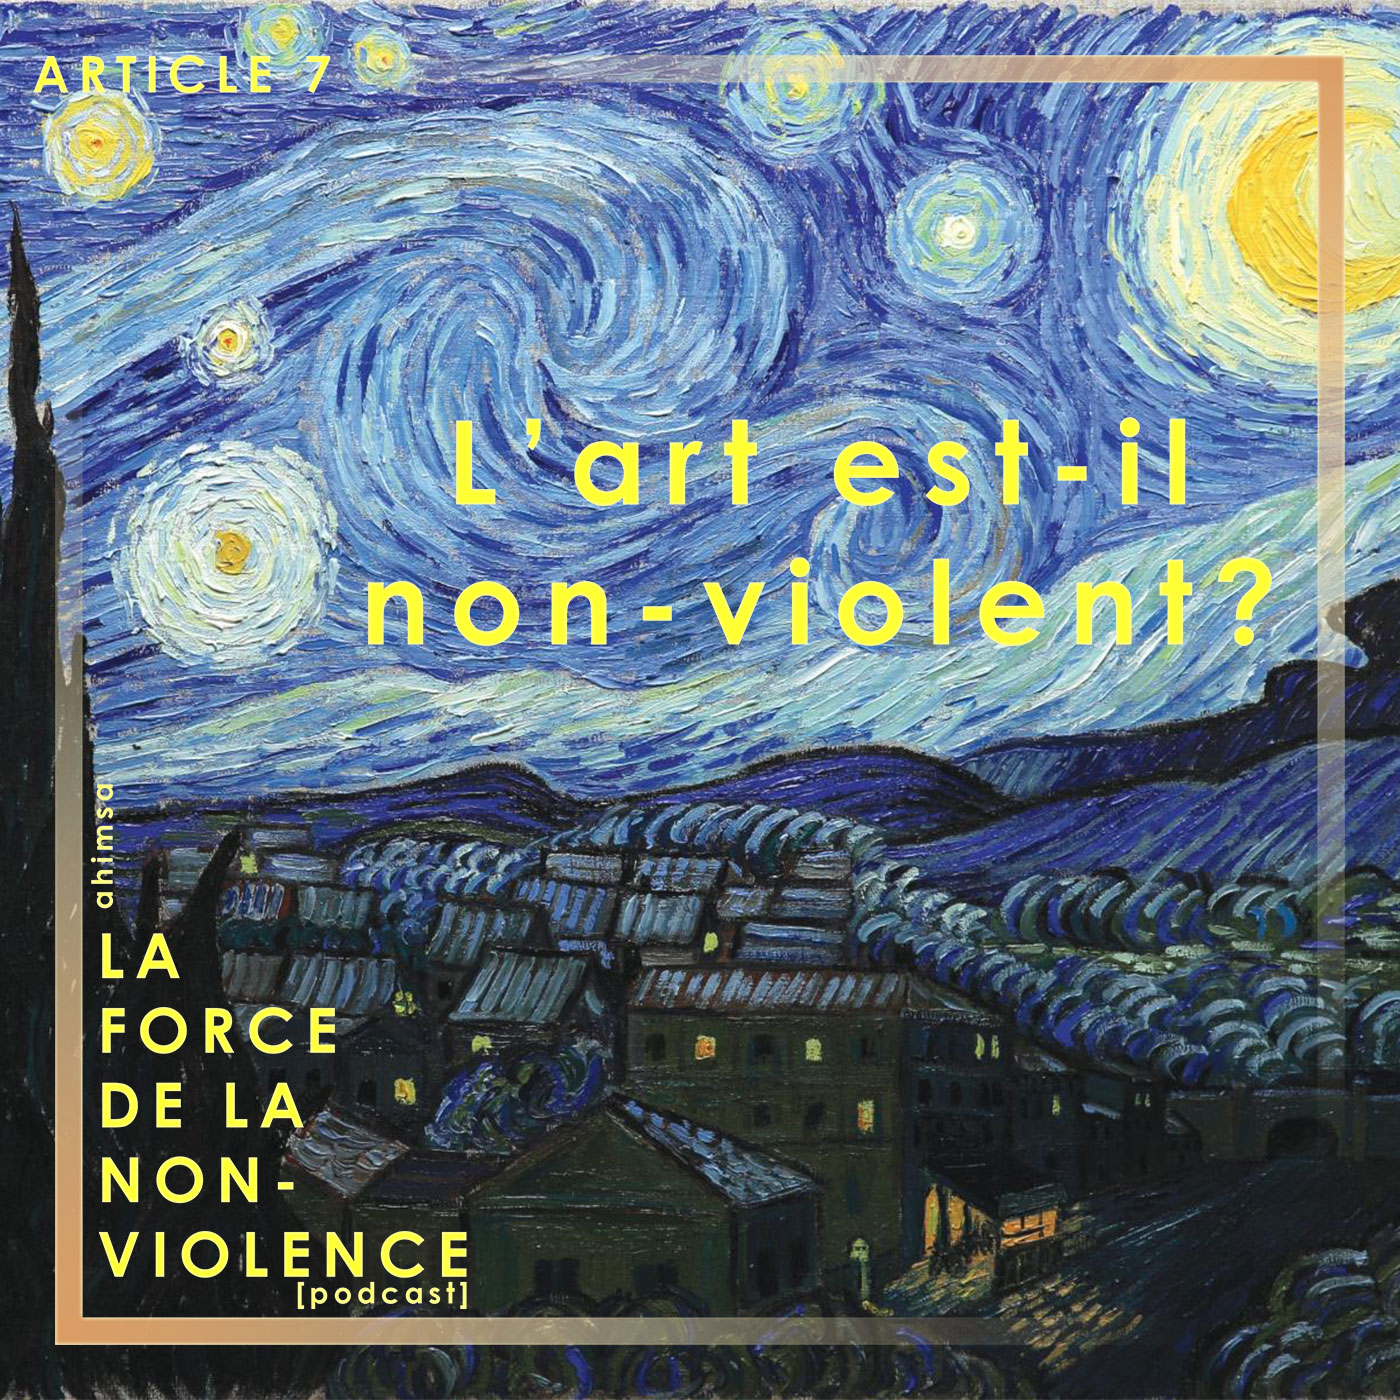 article-7-l'art-est-il-non-violent? Podcast La Force de la Non-violence - blog